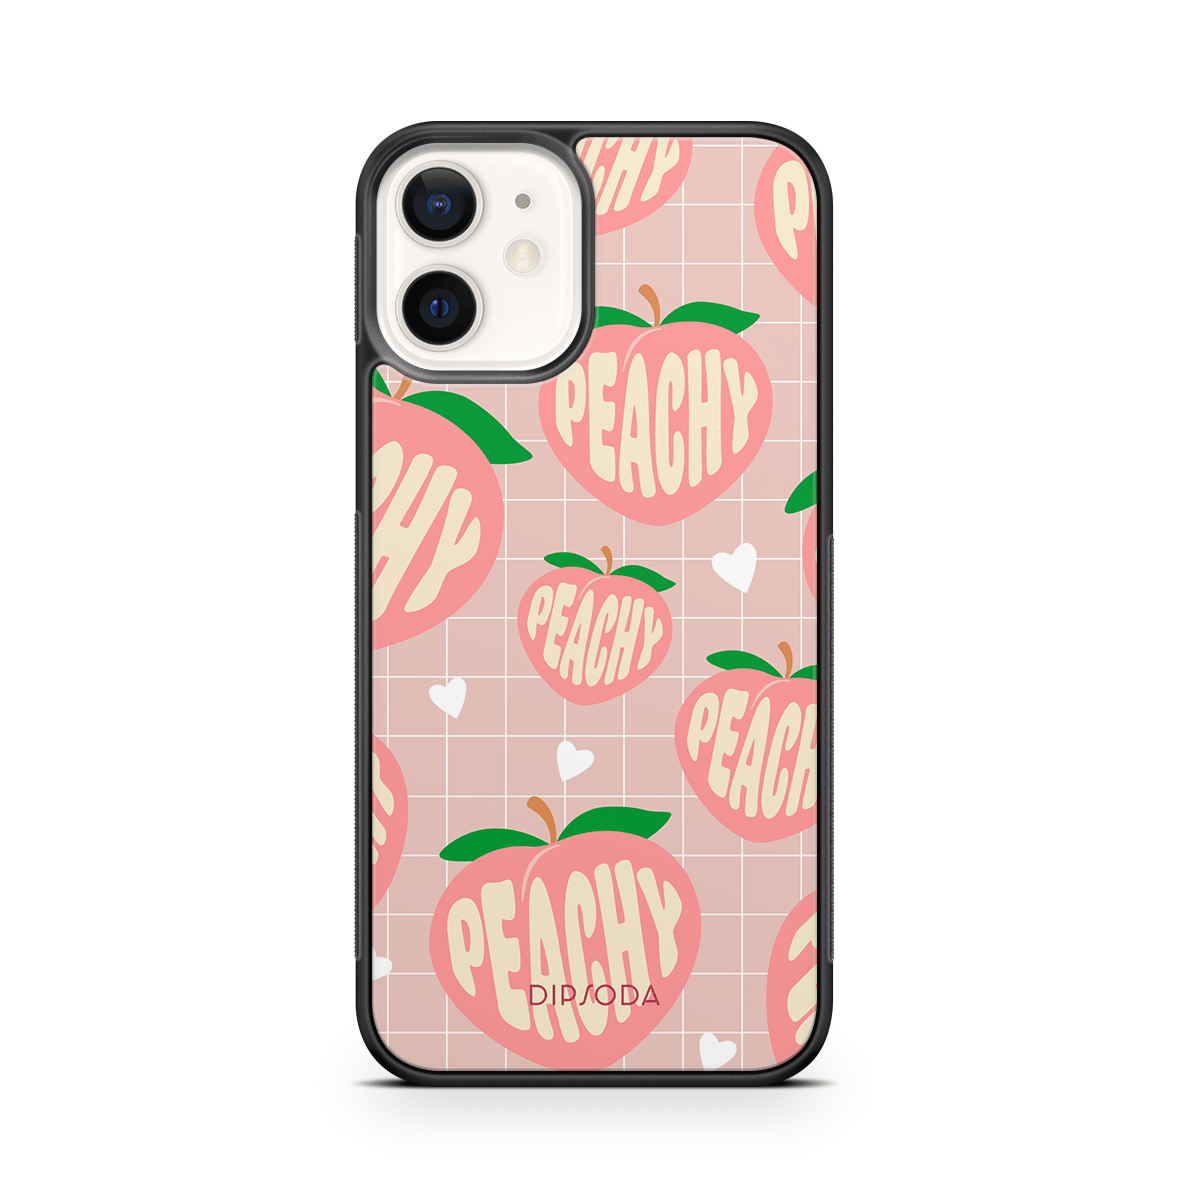 Peachy Blush Rubber Phone Case